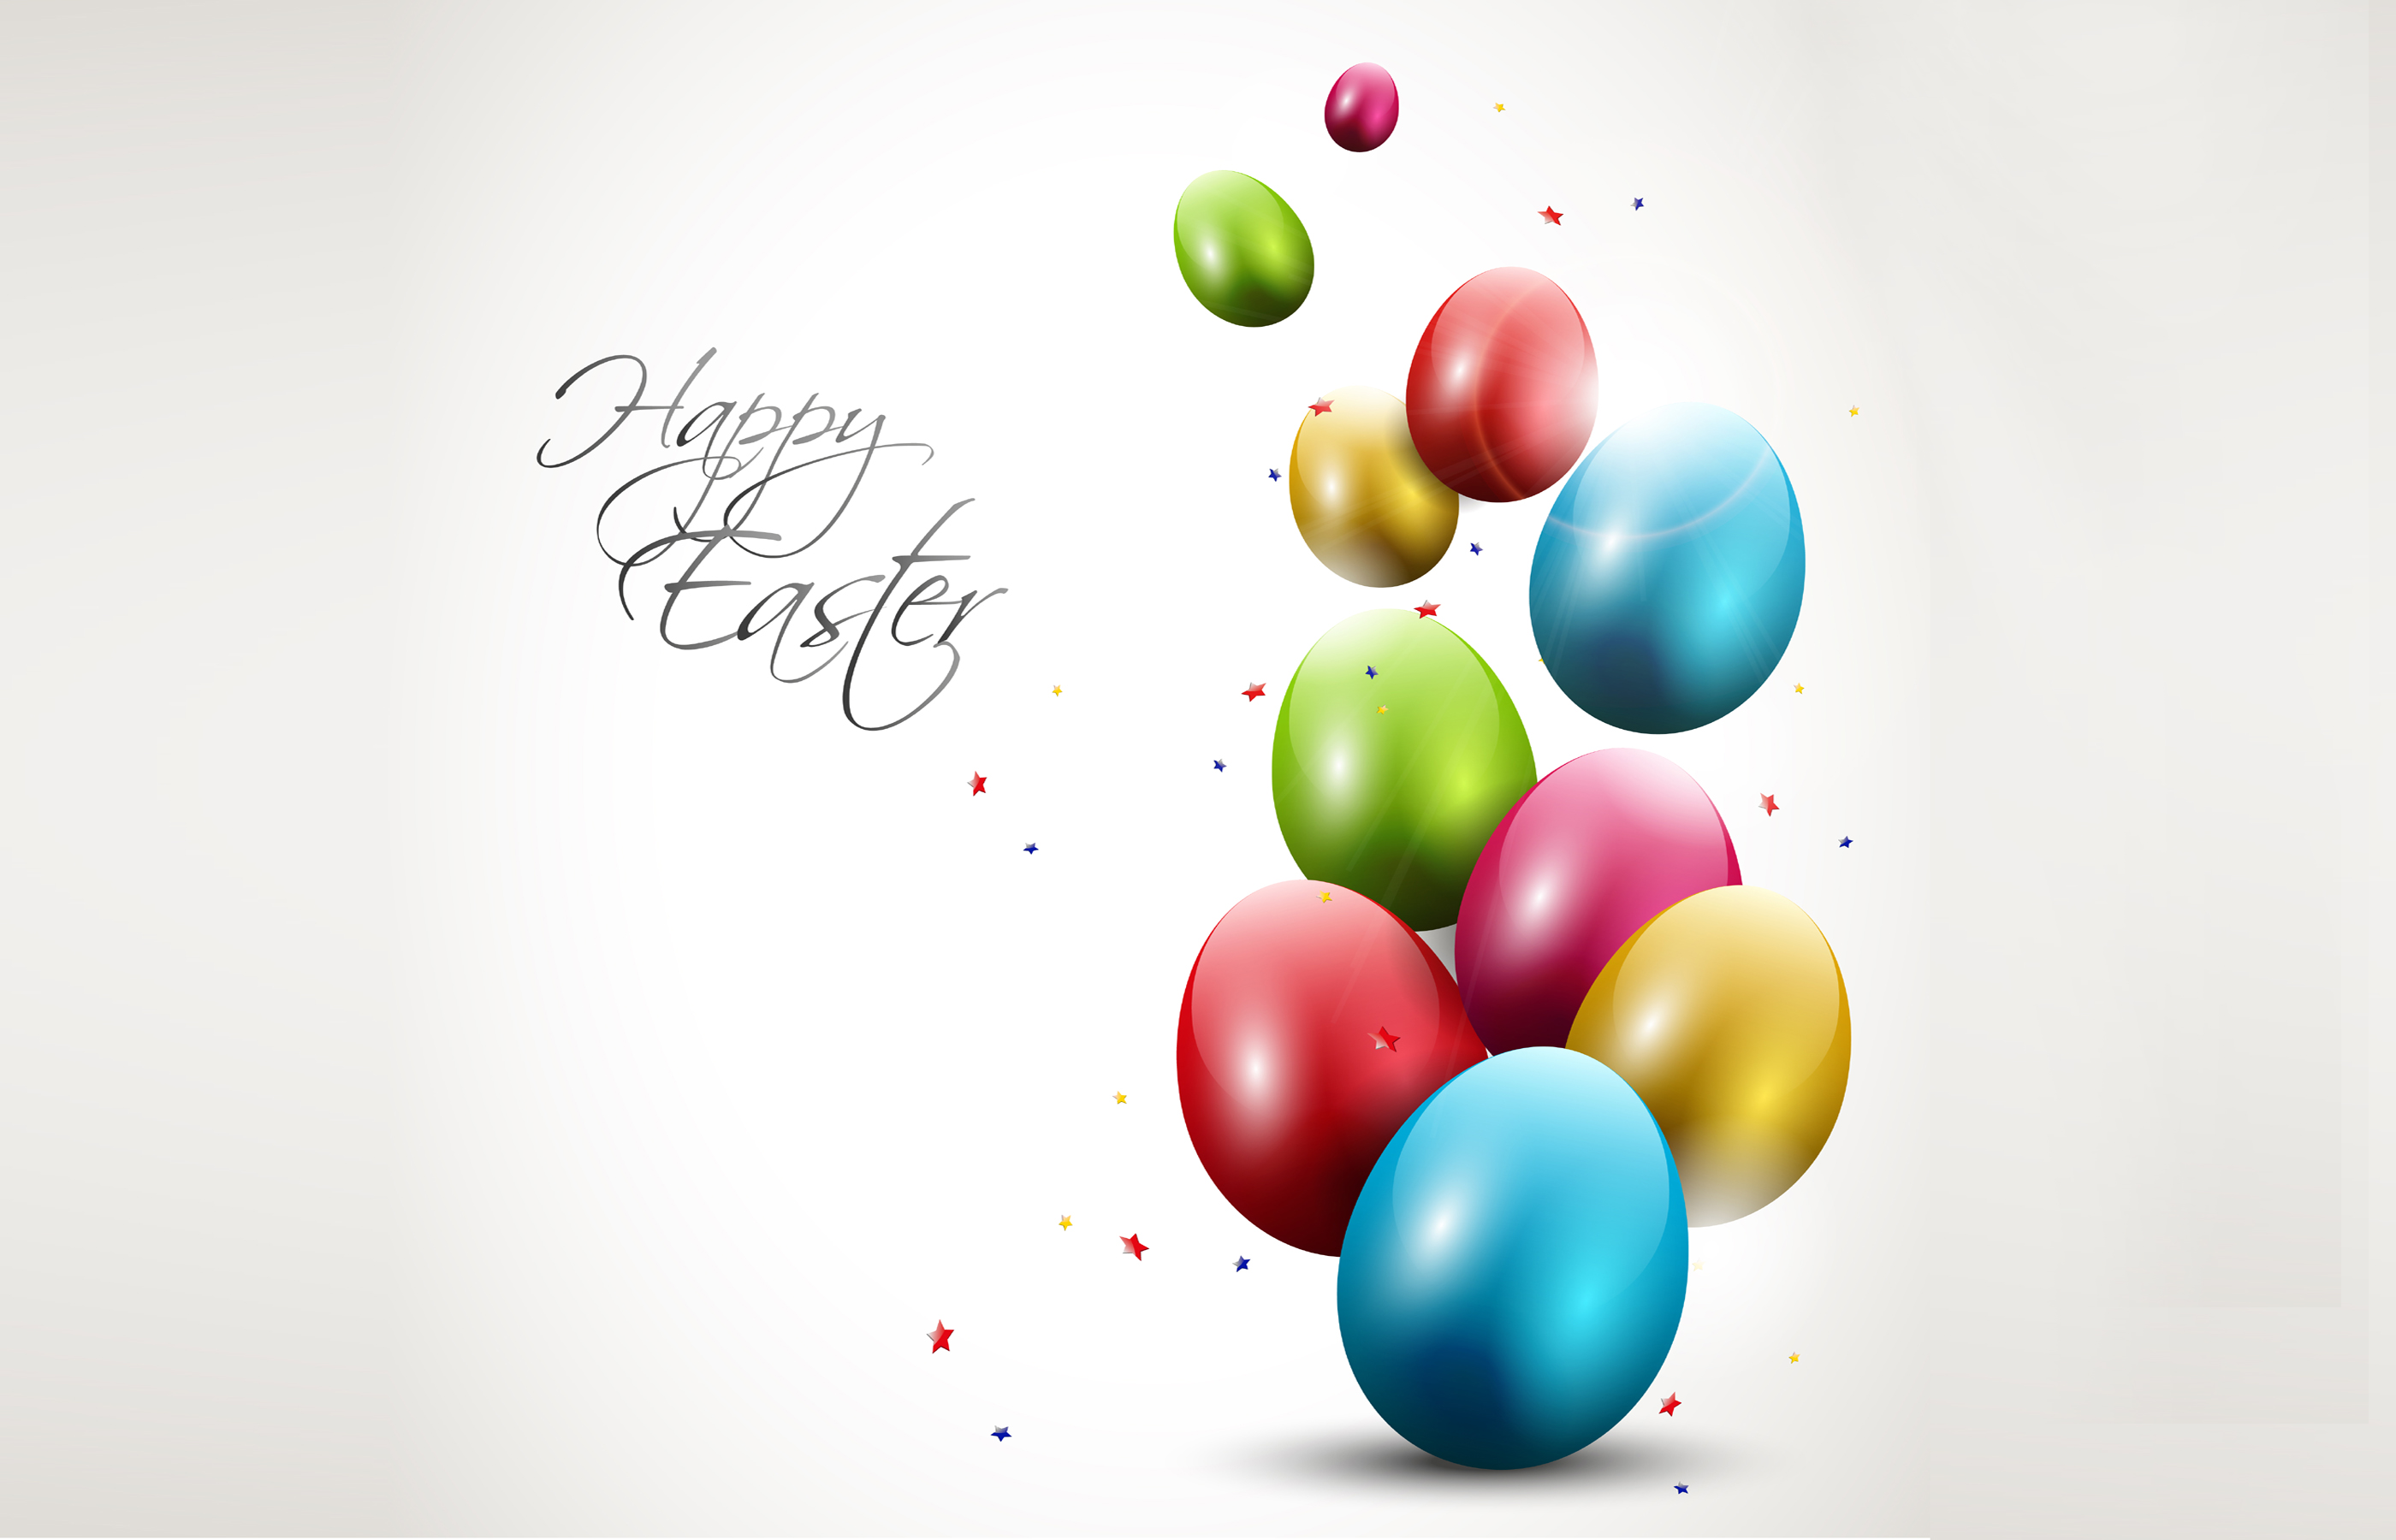 Happy Easter Image For Desktop